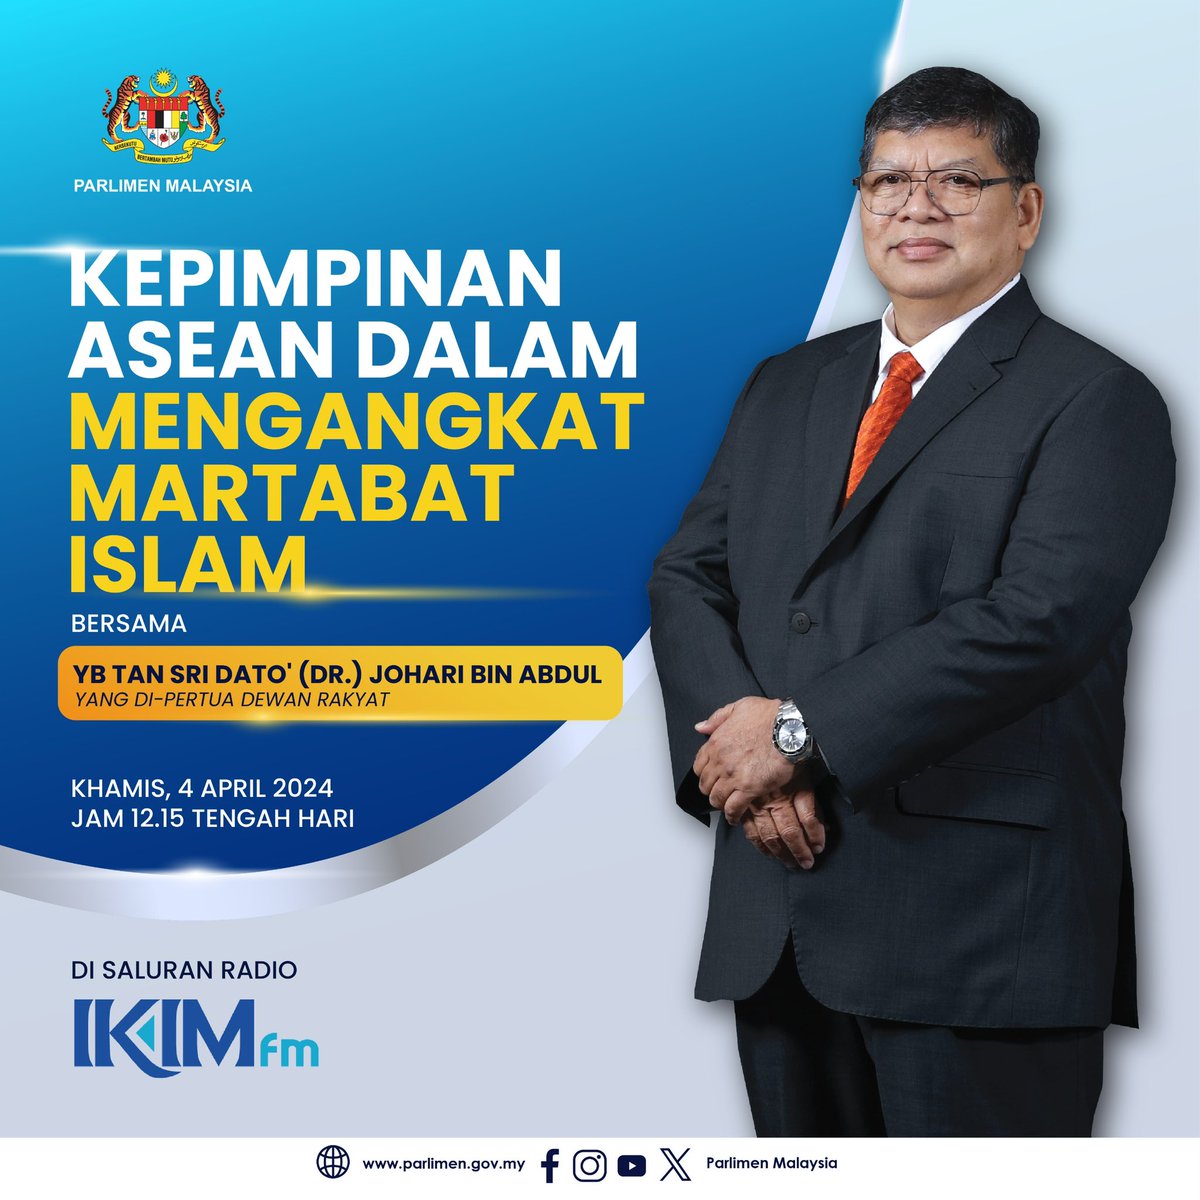 Dengarkan sesi temu bual secara langsung bersama YB Tan Sri Dato’ (Dr.) Johari bin Abdul, Yang di-Pertua Dewan Rakyat dalam slot Resolusi di IKIM. fm yang akan membincangkan topik Kepimpinan ASEAN Dalam Mengangkat Martabat Islam. Bahagian Komunikasi Korporat Parlimen Malaysia